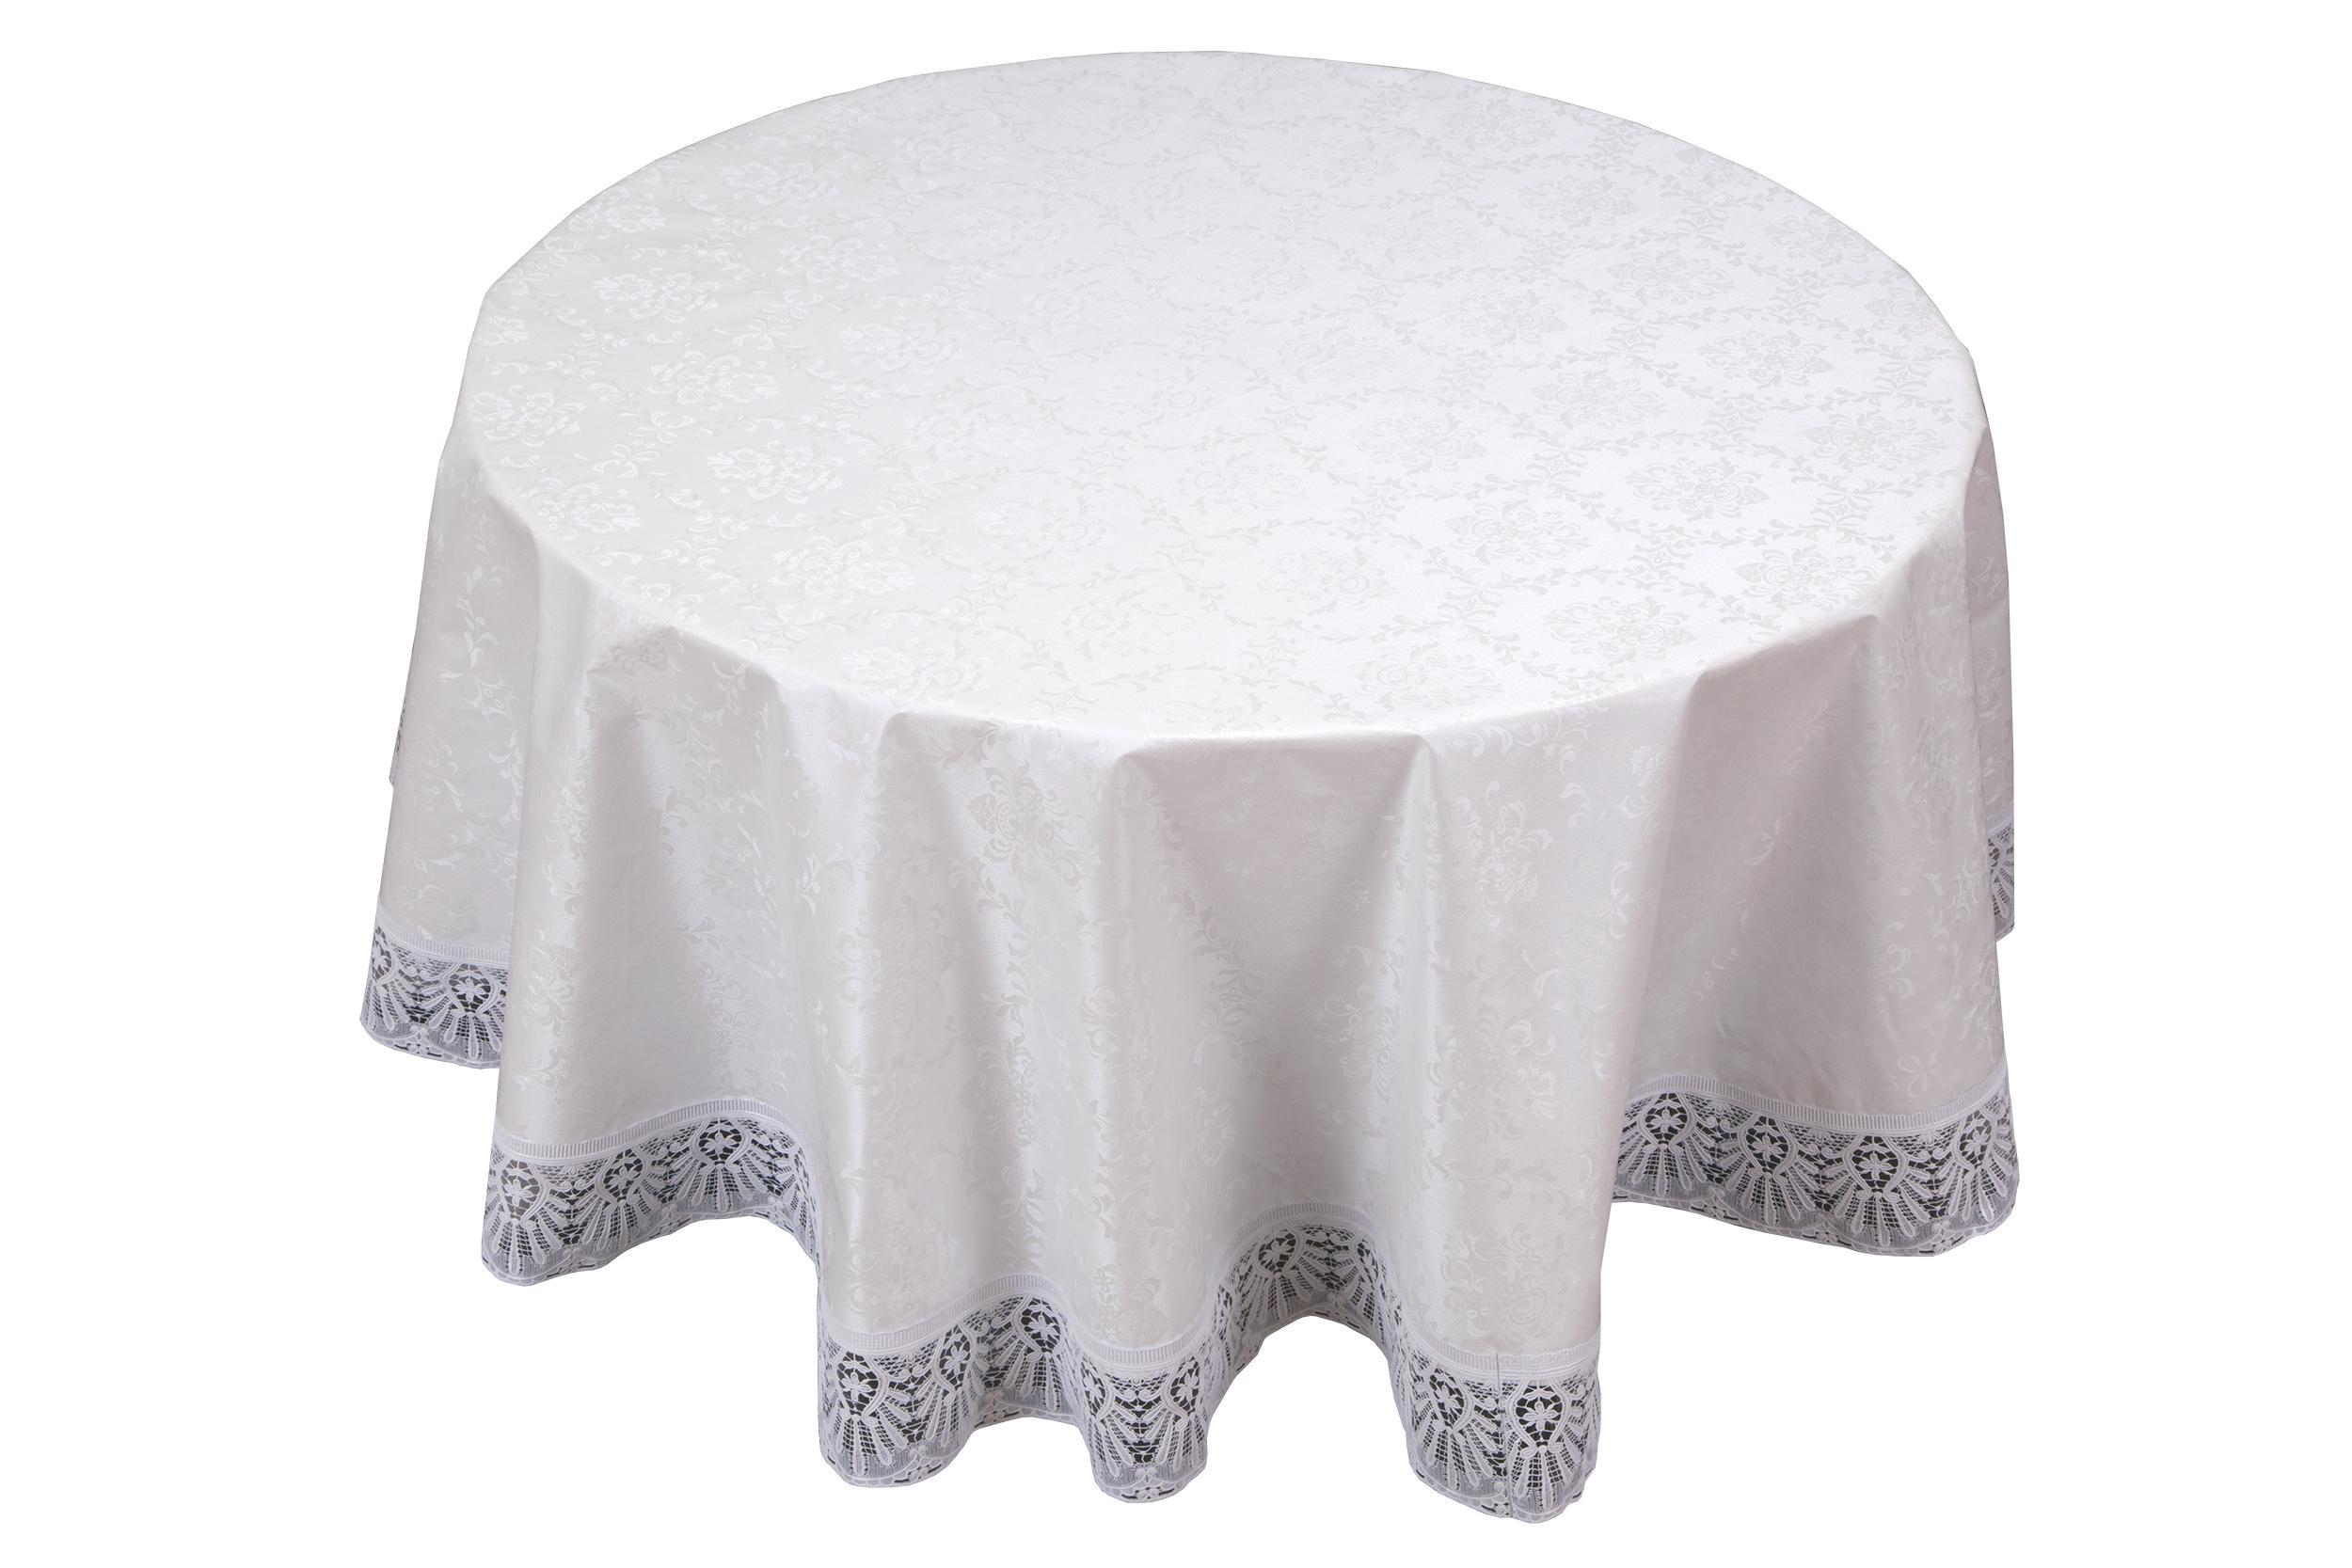 Сонник круглый стол с белой скатертью